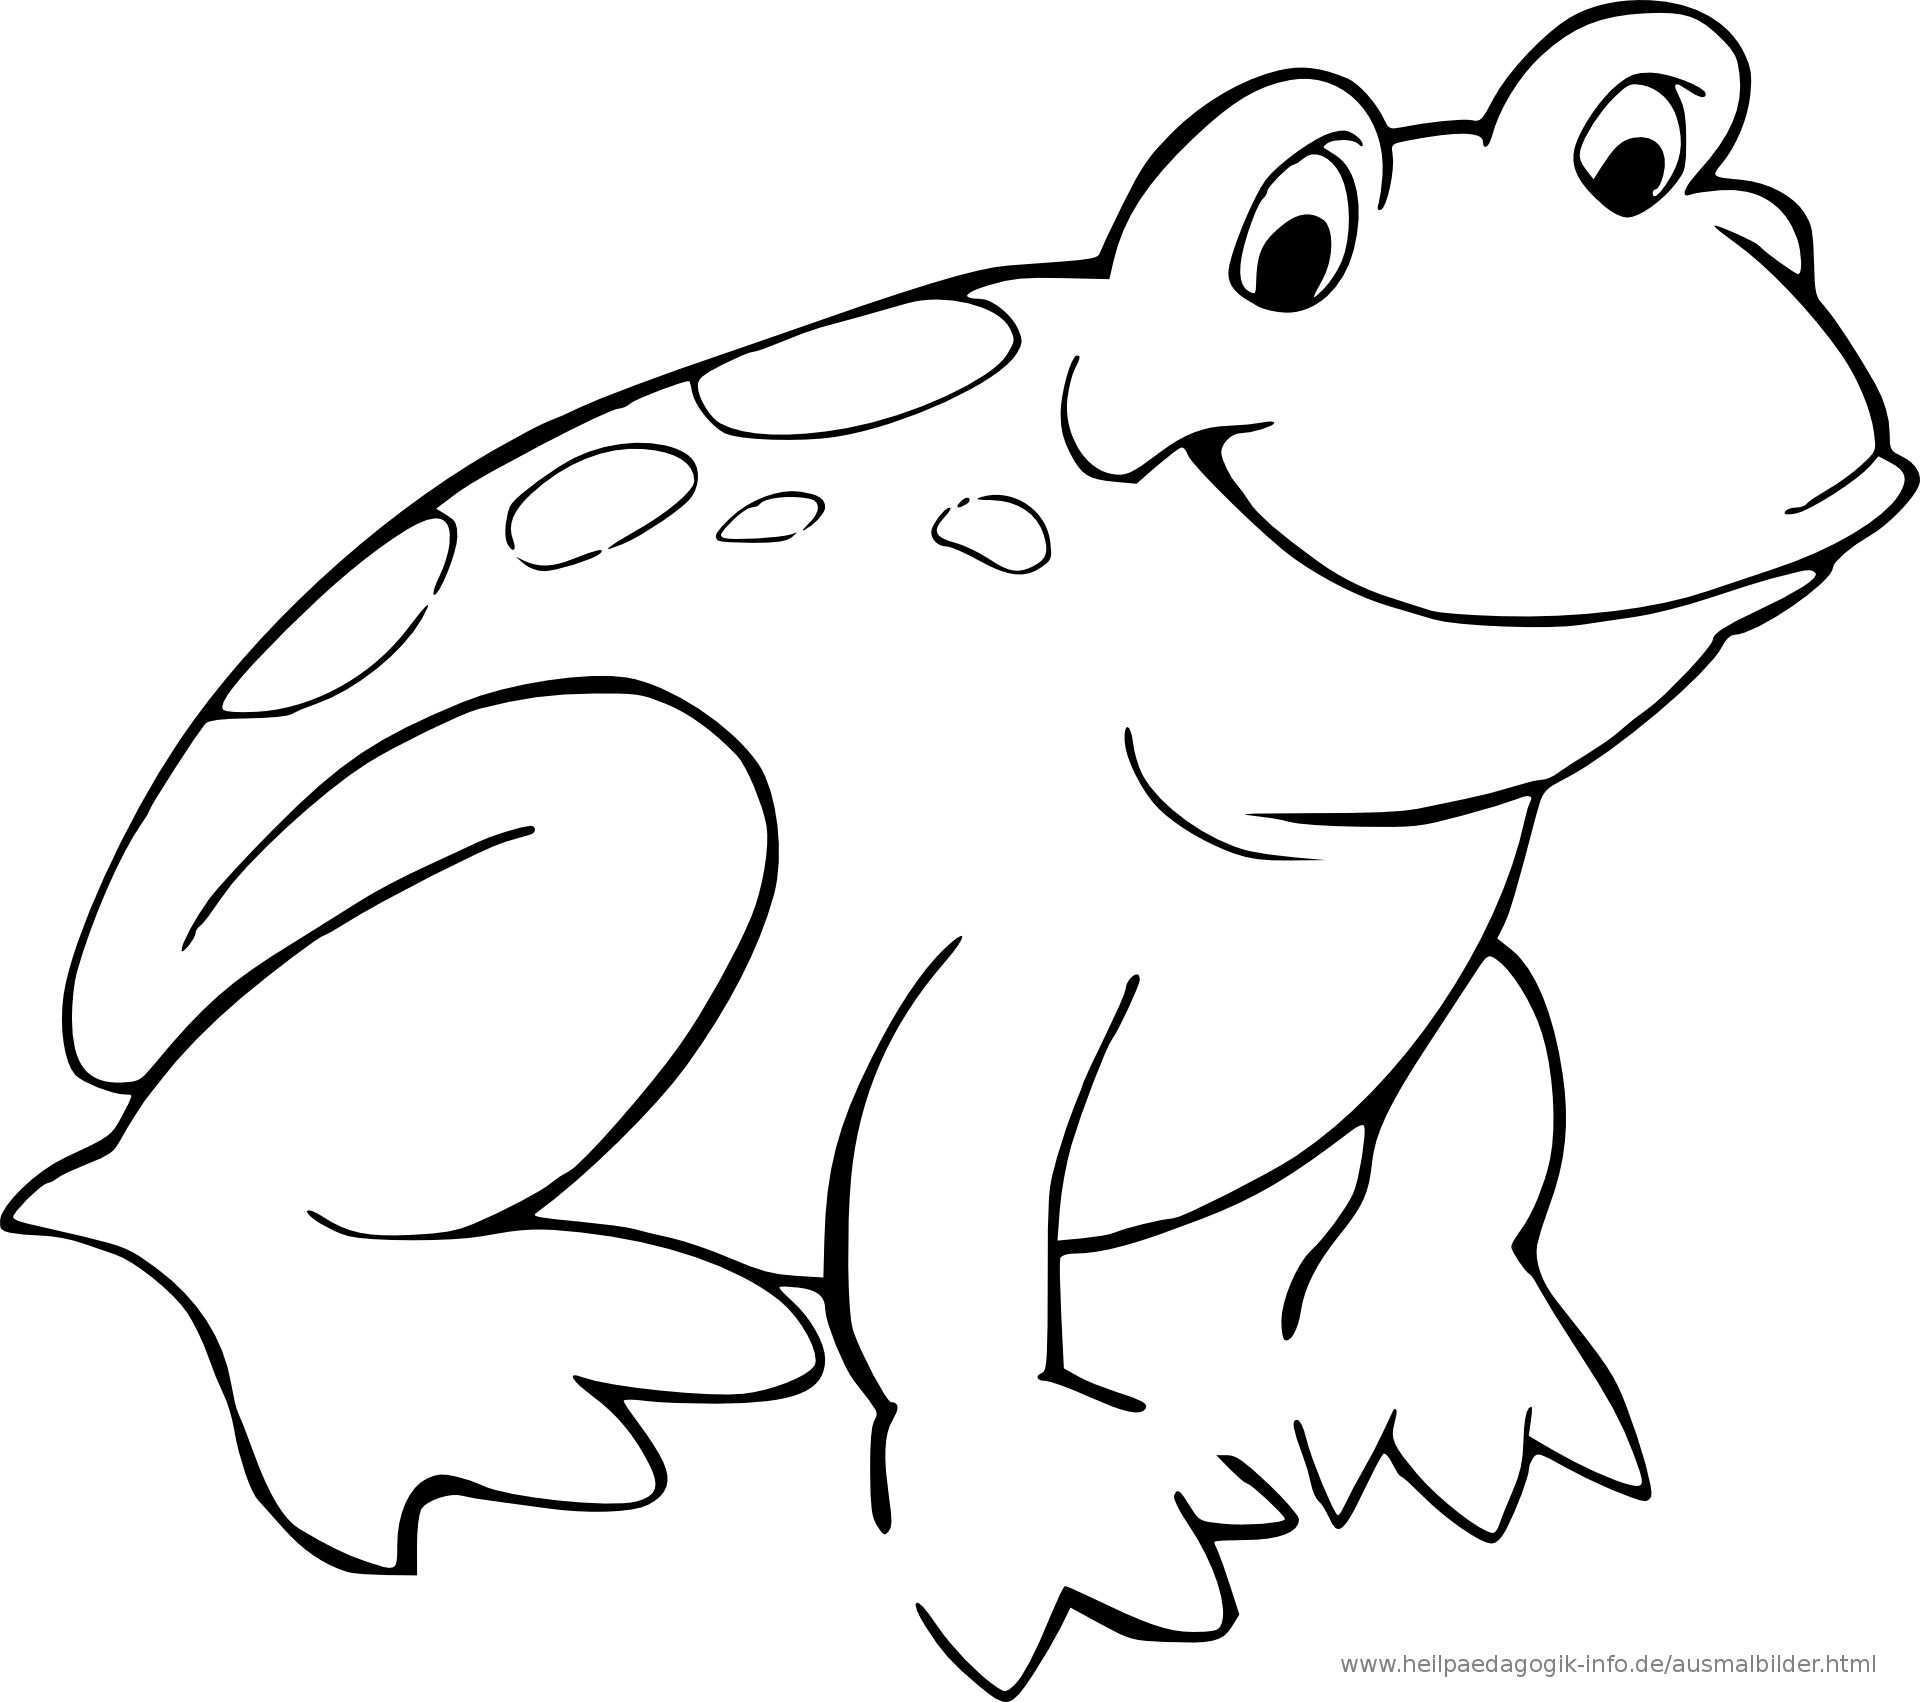 Malvorlagen Frosch In 2020 Malvorlage Prinzessin Kostenlose Ausmalbilder Frosch Zeichnung